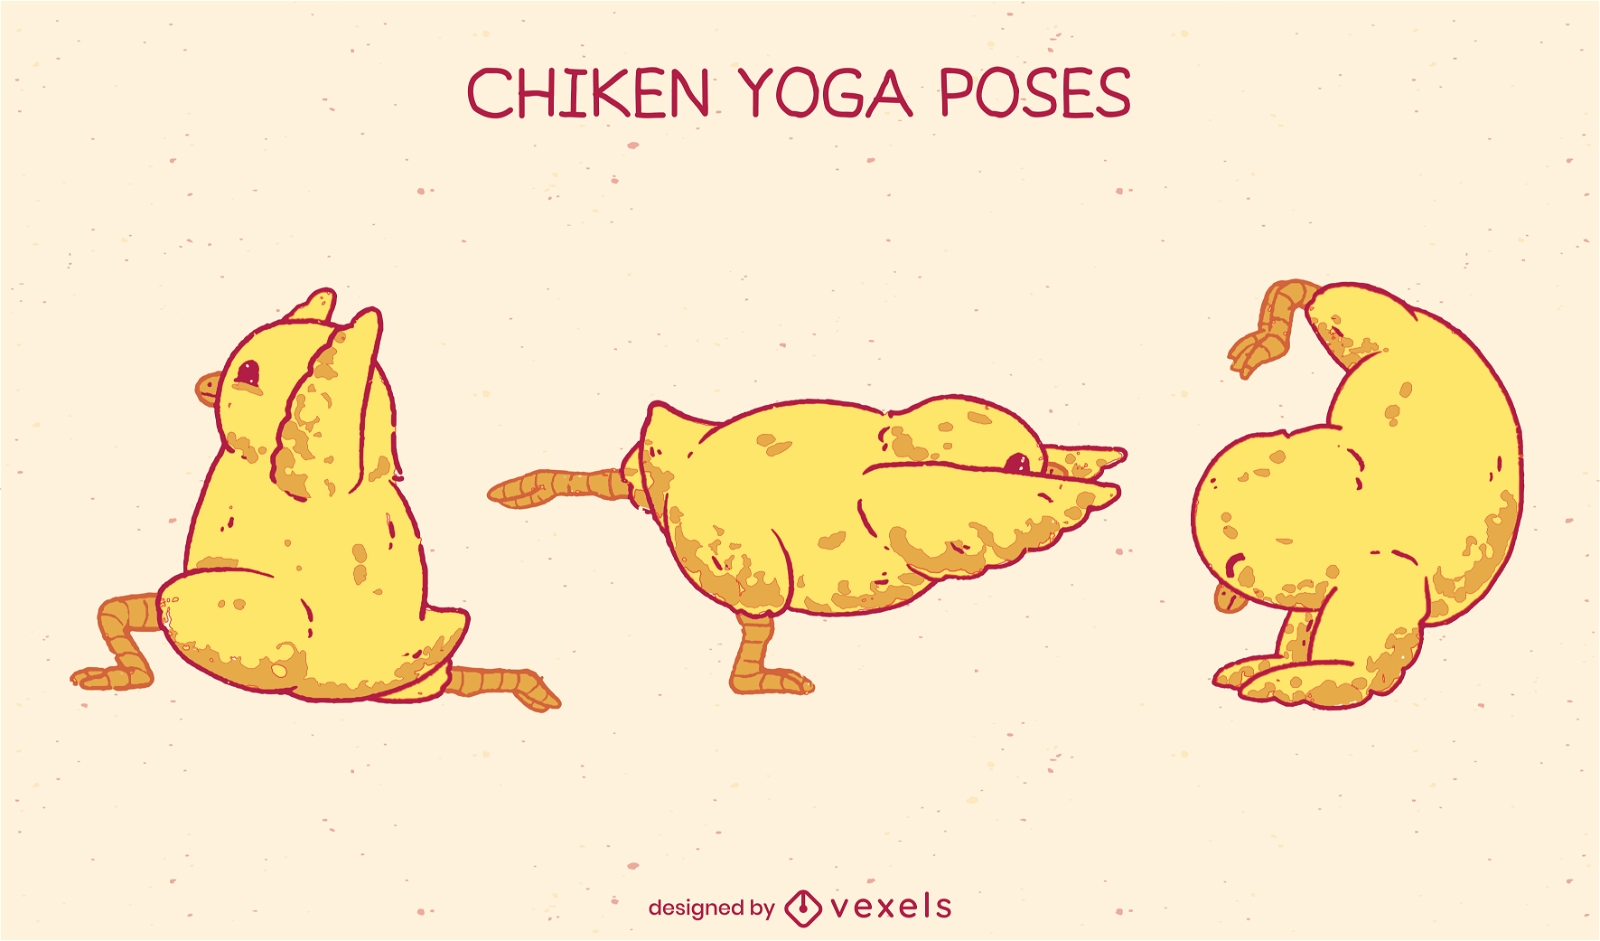 Chick animales en poses de yoga lindo conjunto